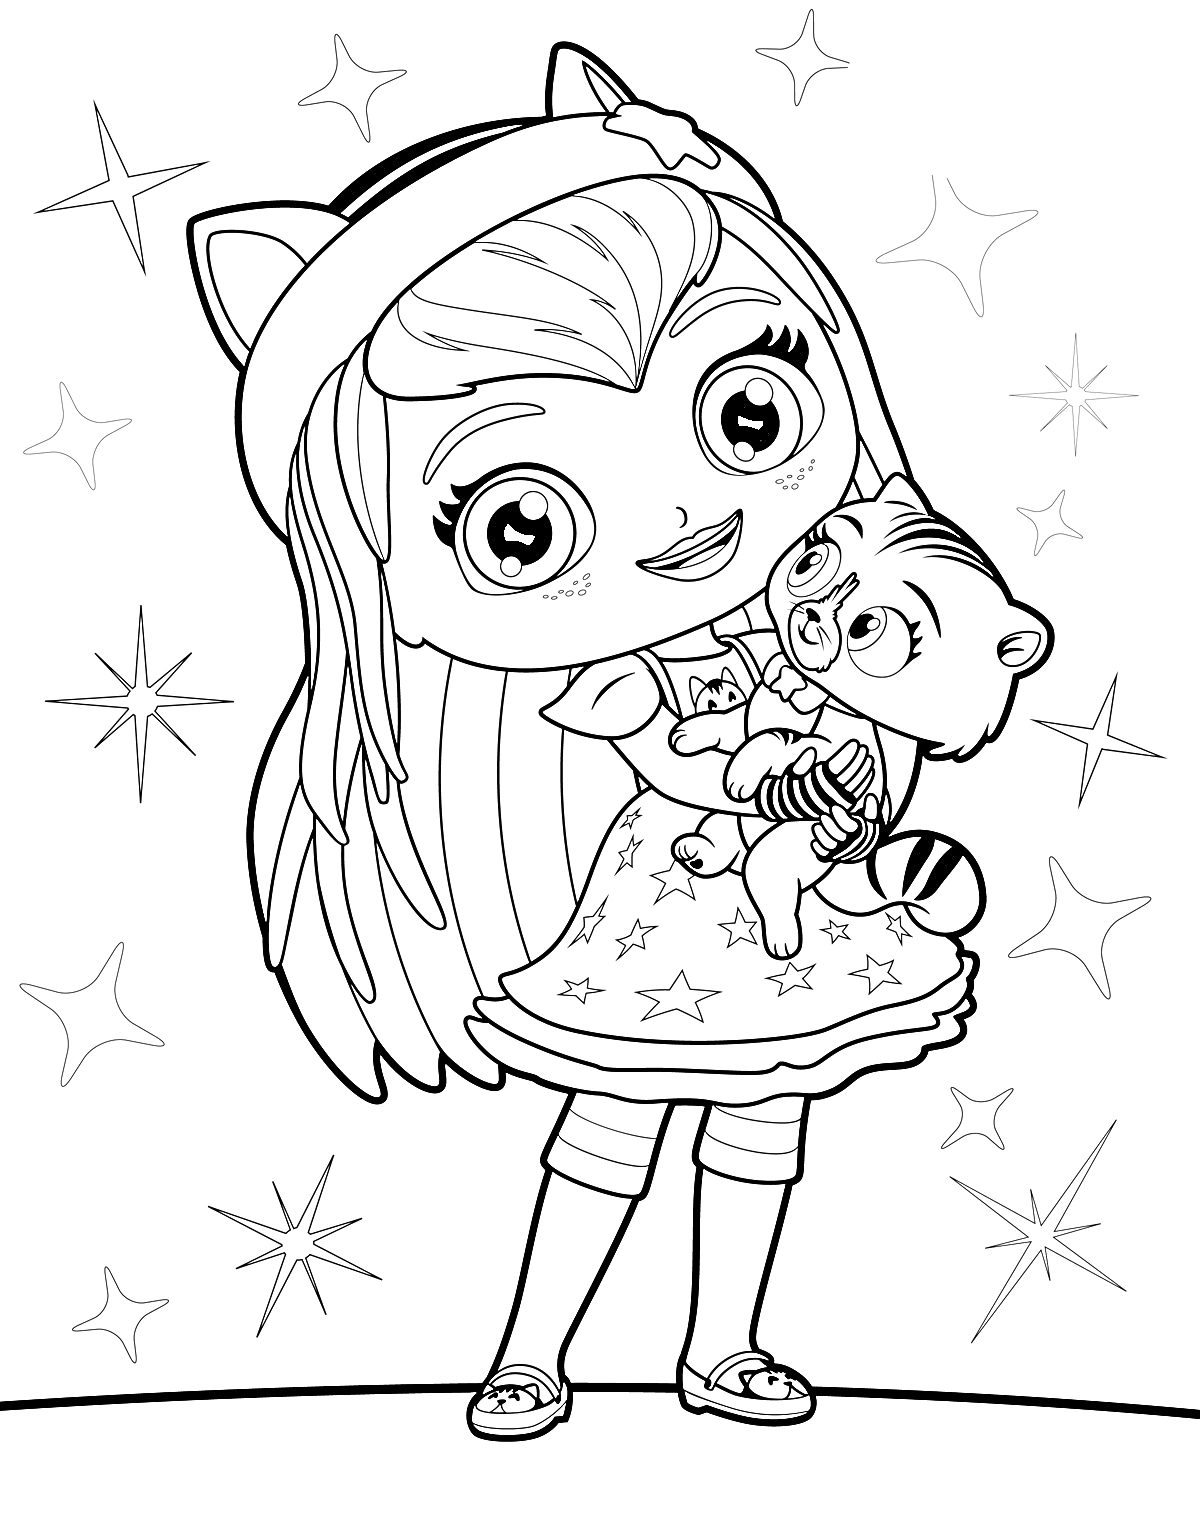 Девочка с кошачьими ушками и платьем со звездами, держащая малыша енота, на фоне звезд